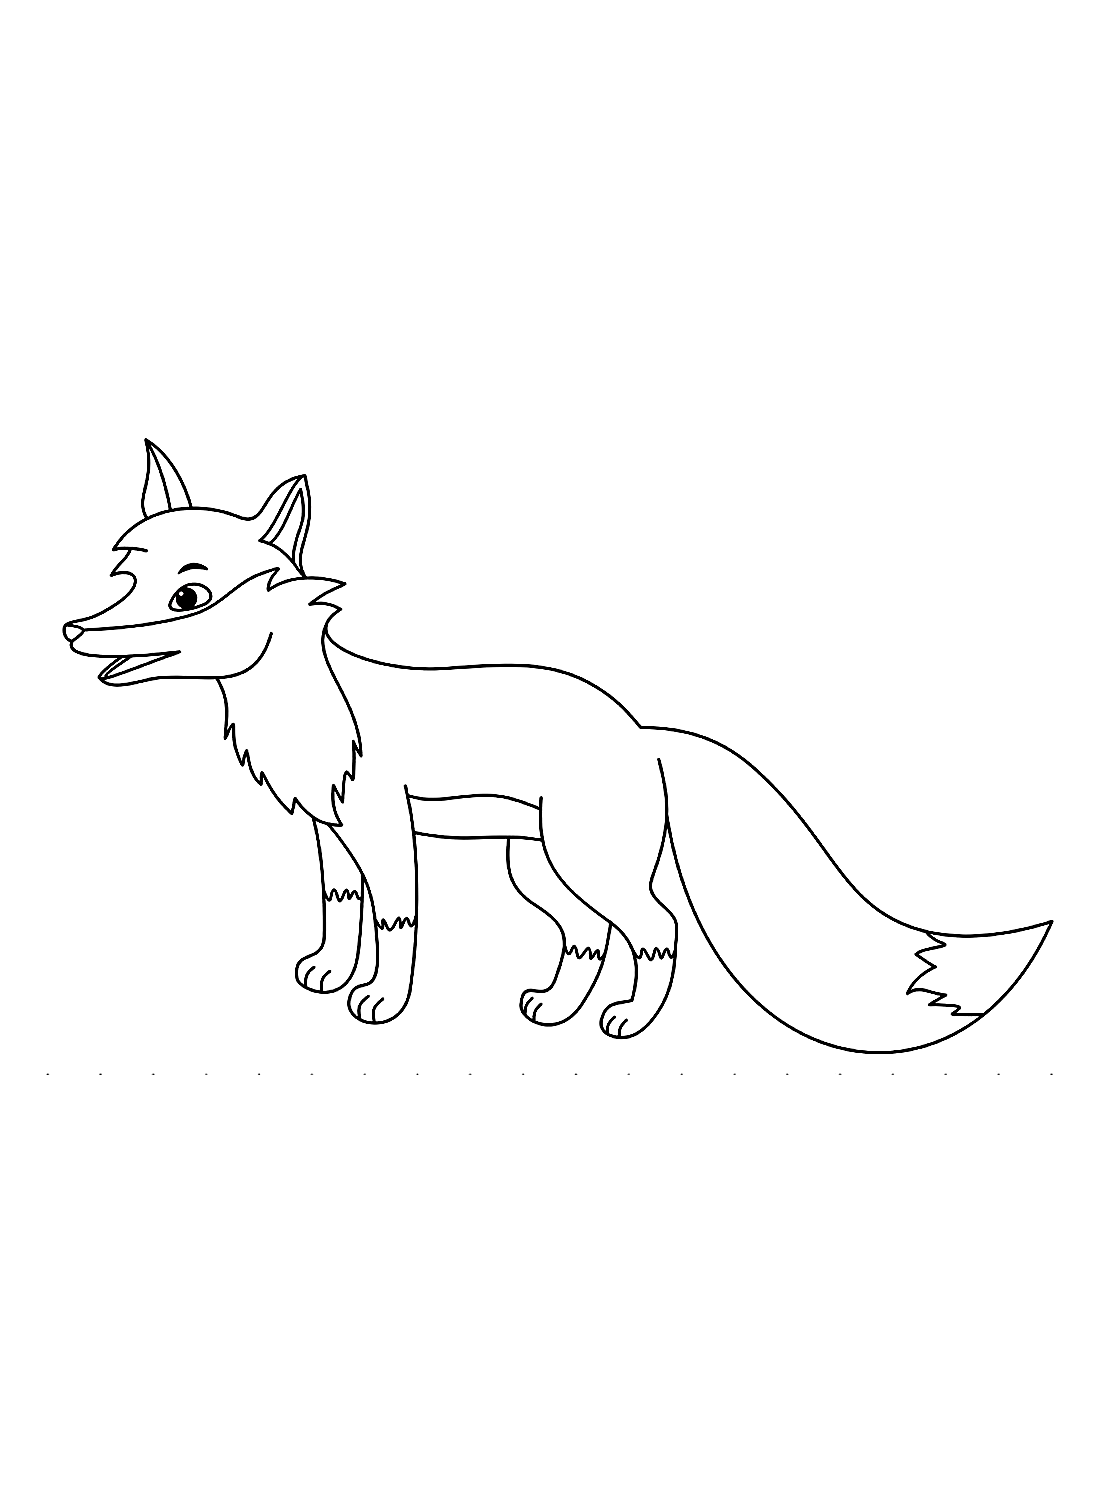 Kleurplaat voor volwassen vossen van Fox